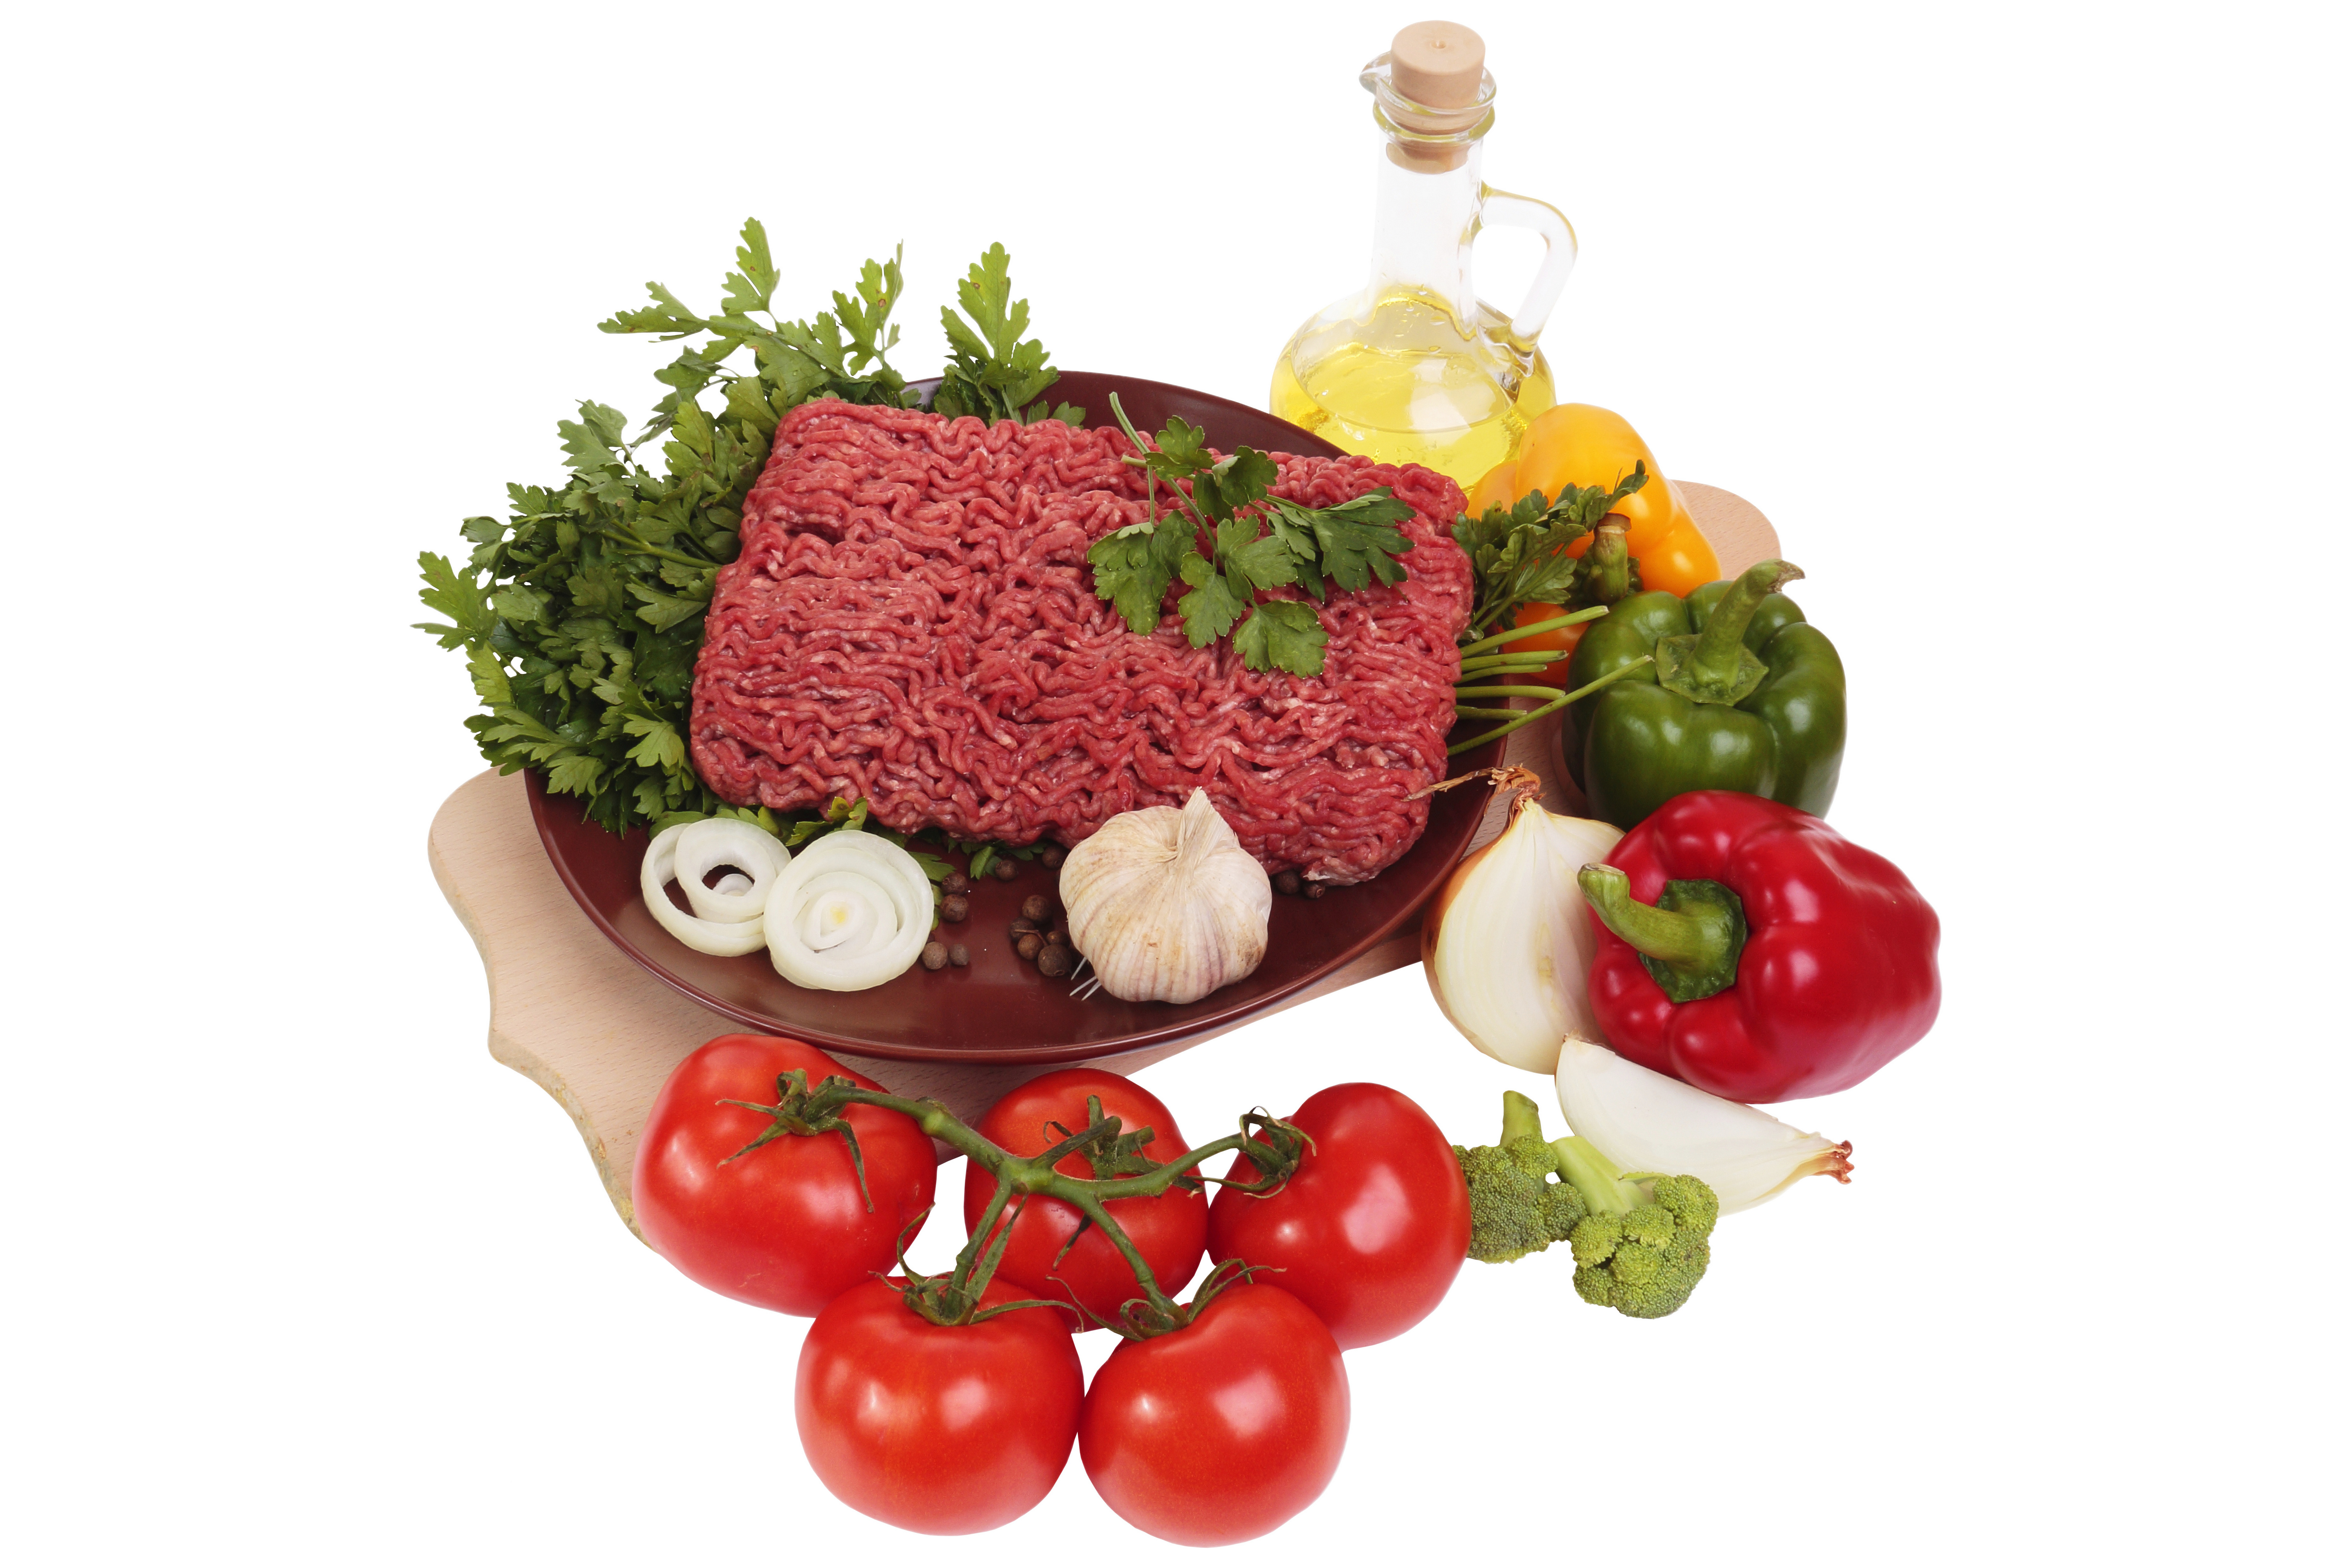 Zastaki.com - Мясной фарш на белом фоне с овощами и зеленью